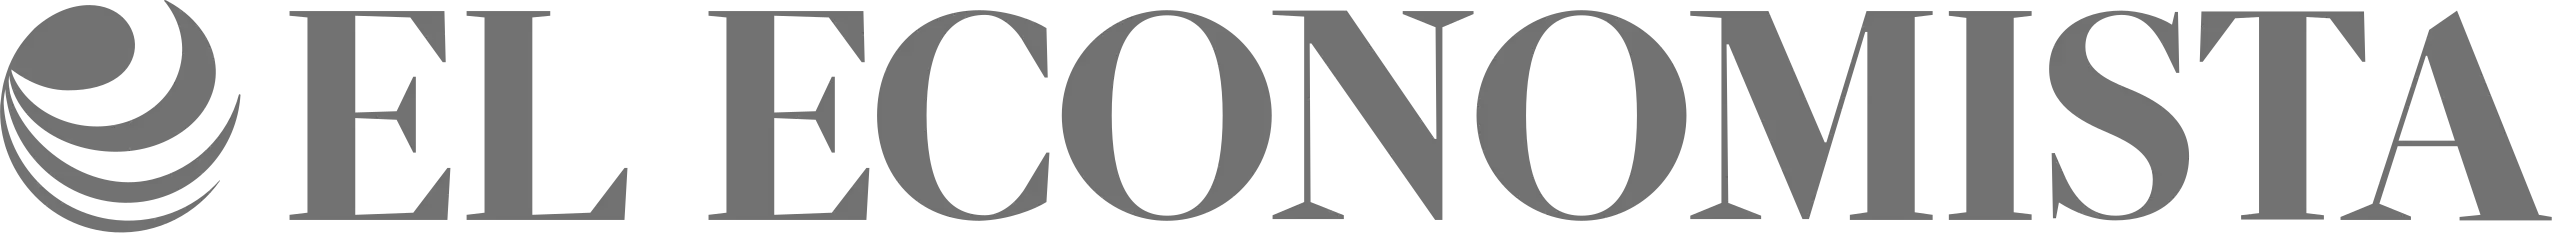 El Economista (logo)